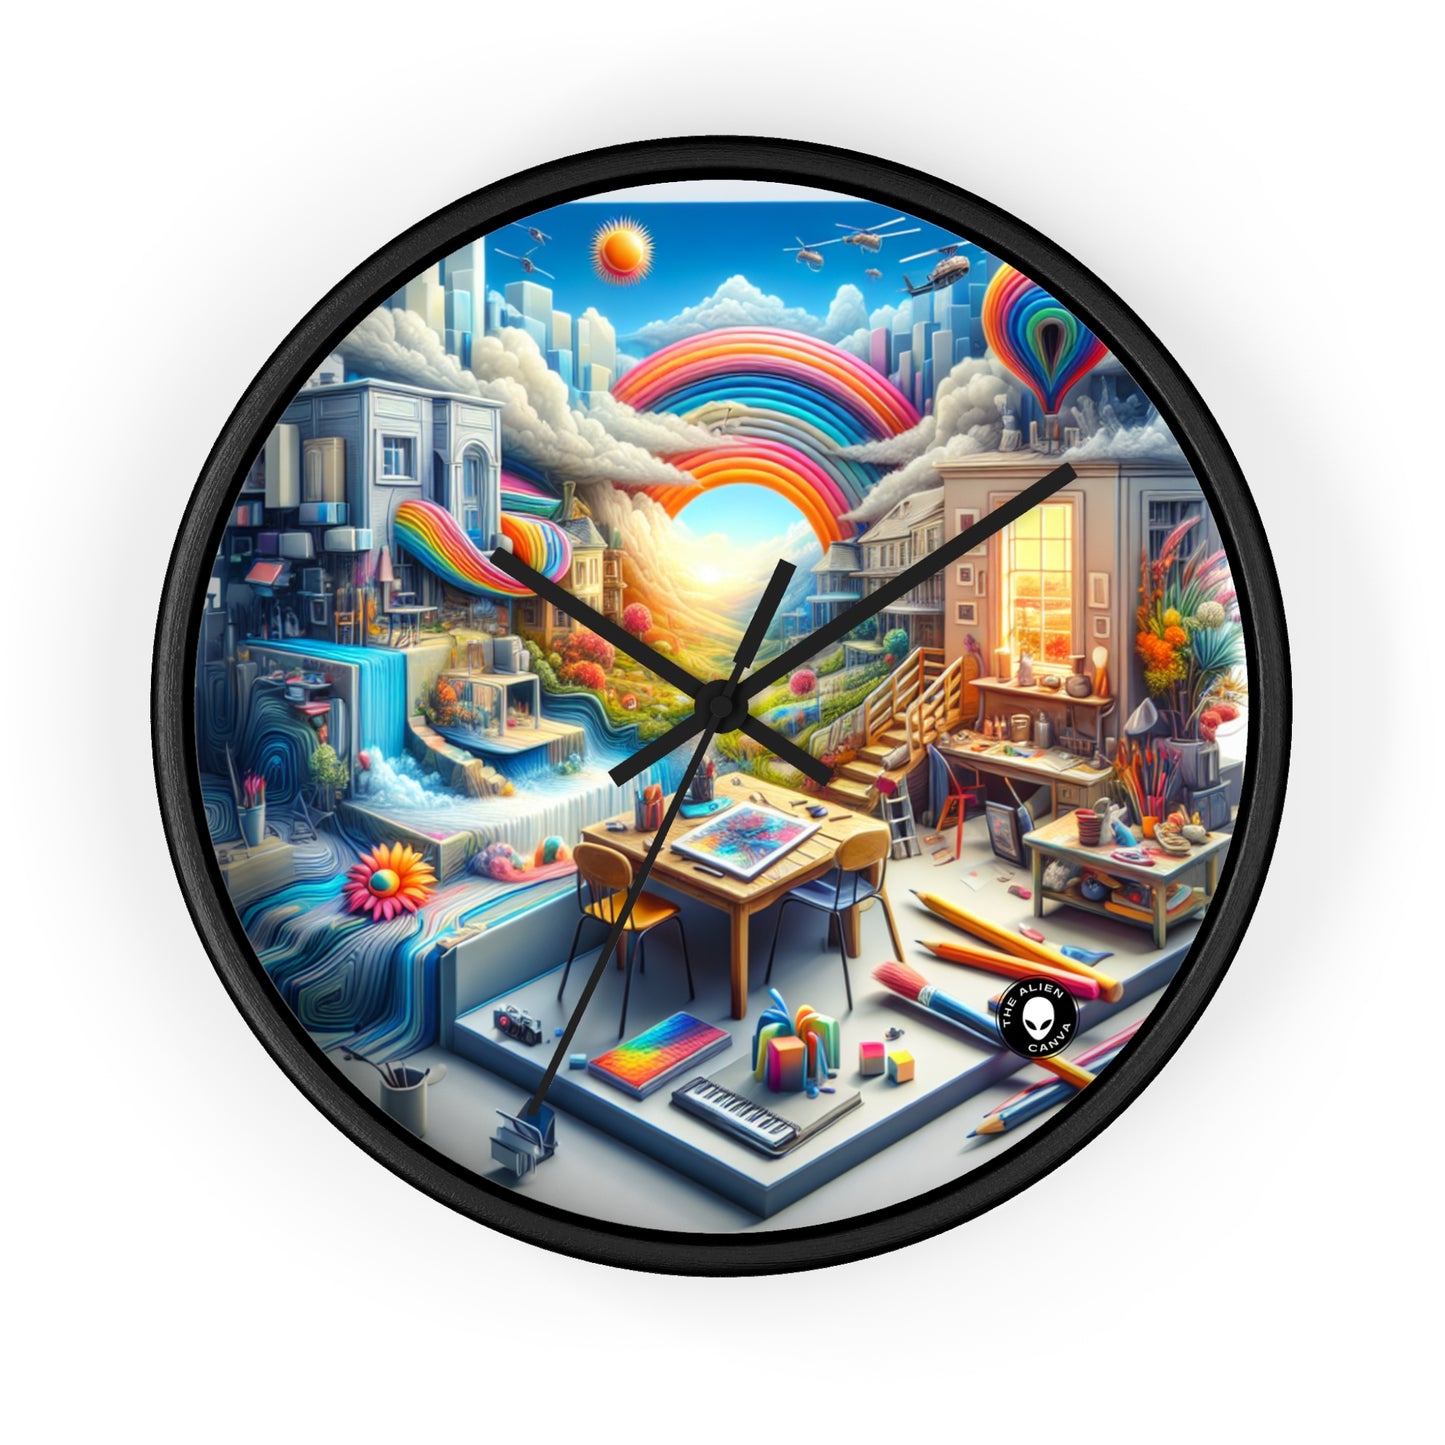 « Fusion futuriste : un paysage urbain simulationniste » - Le simulationnisme de l'horloge murale extraterrestre